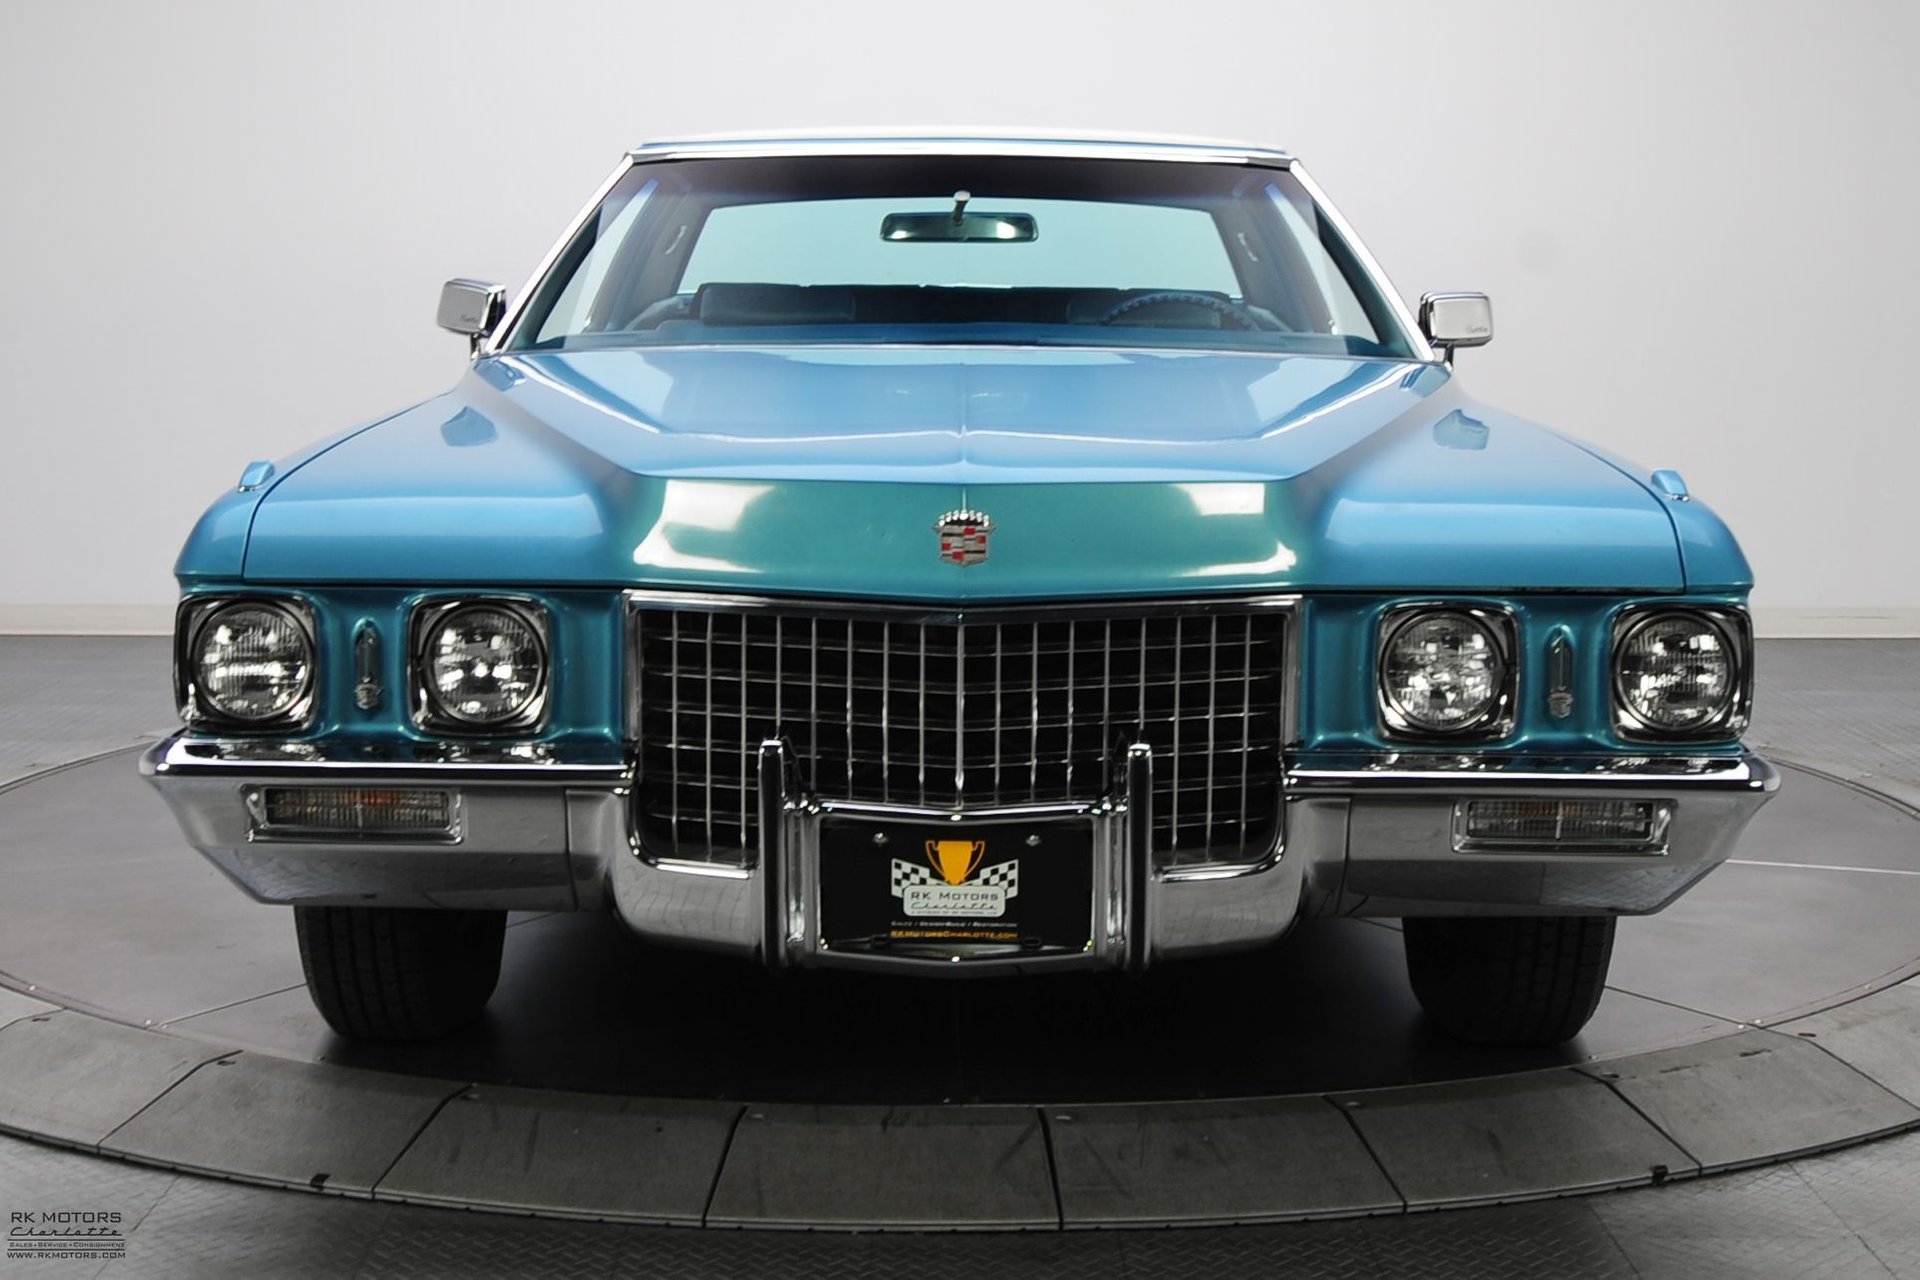 1971 Cadillac Sedan Deville exterior front DRIVER side bumper chrome core end